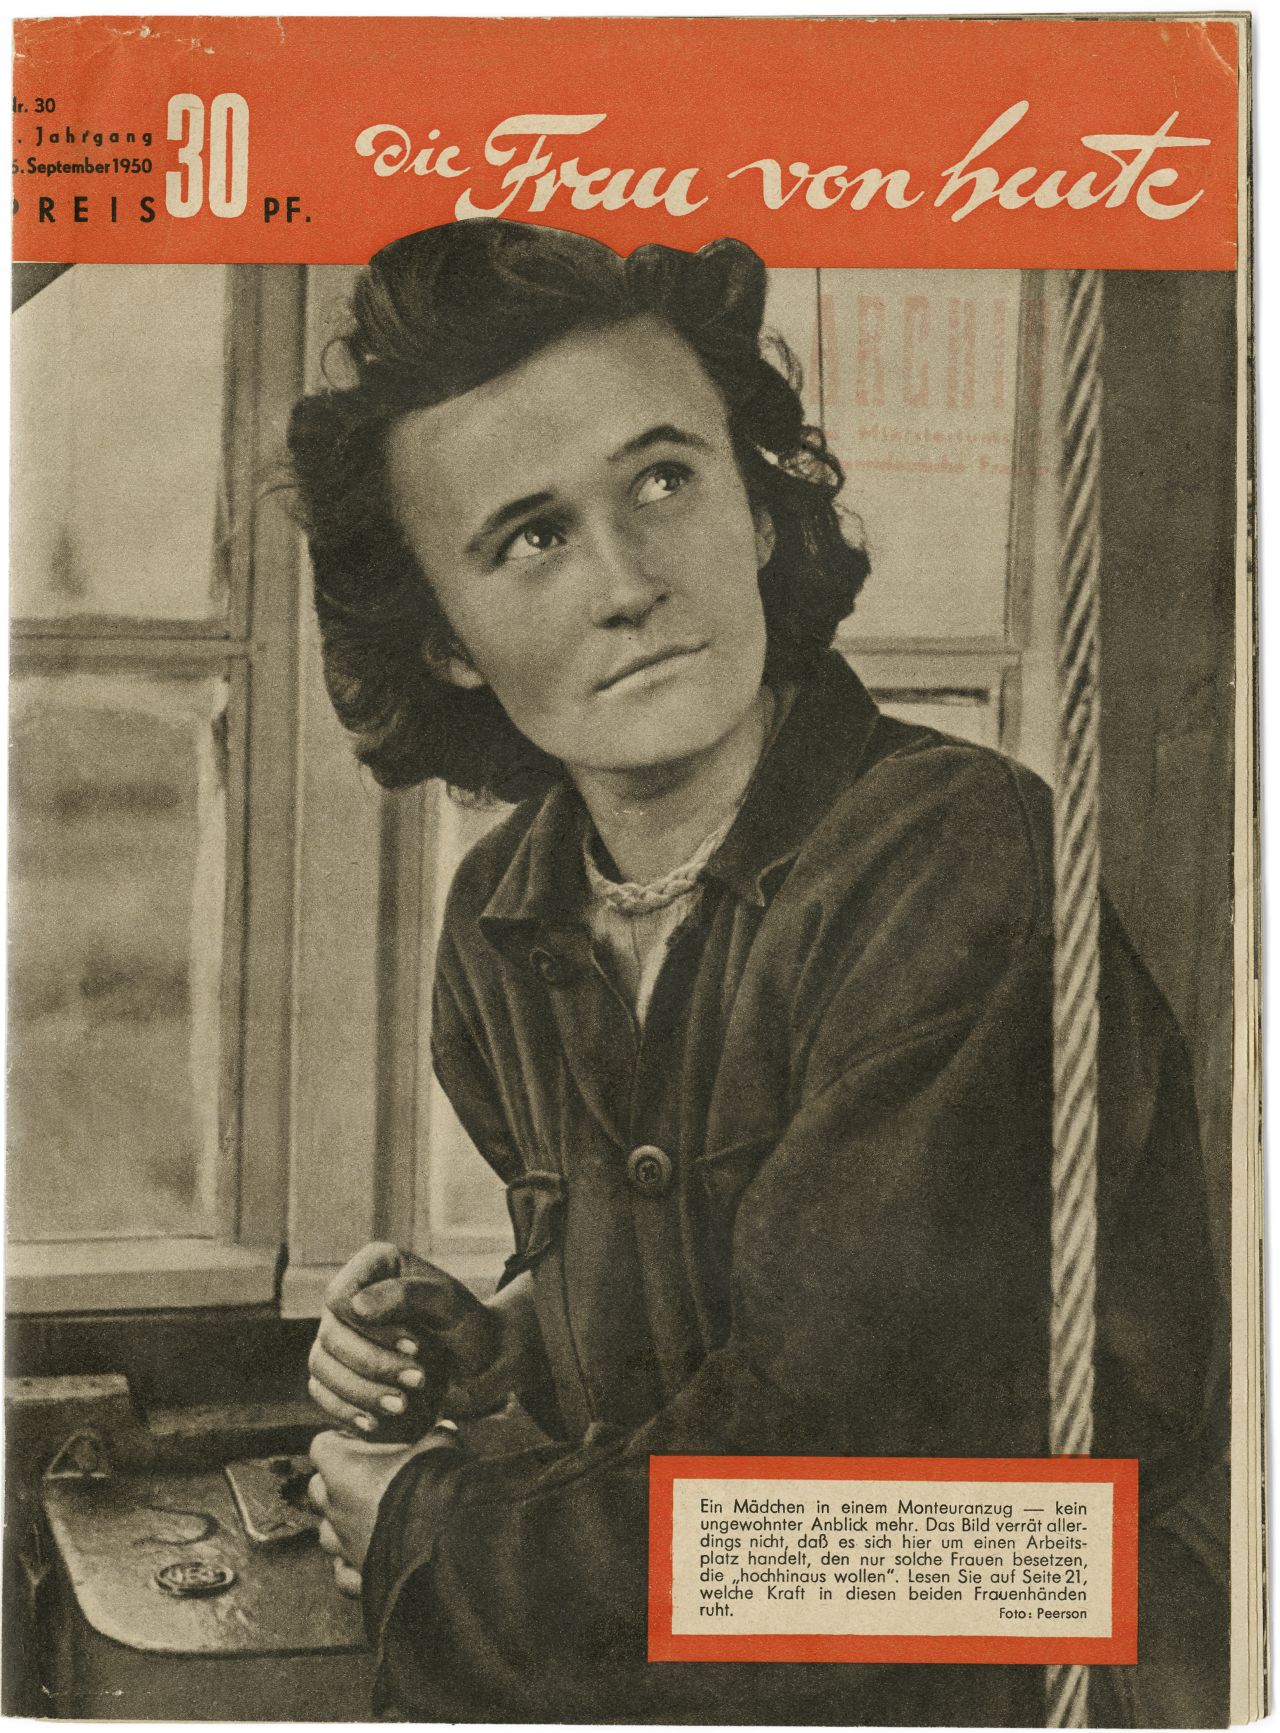 Titelseite der Zeitschrift Frau von heute mit schwarz-weiß-Foto einer nach oben schauenden Frau. Orangene Titelzeile mit dem Namen der Zeitschrift.